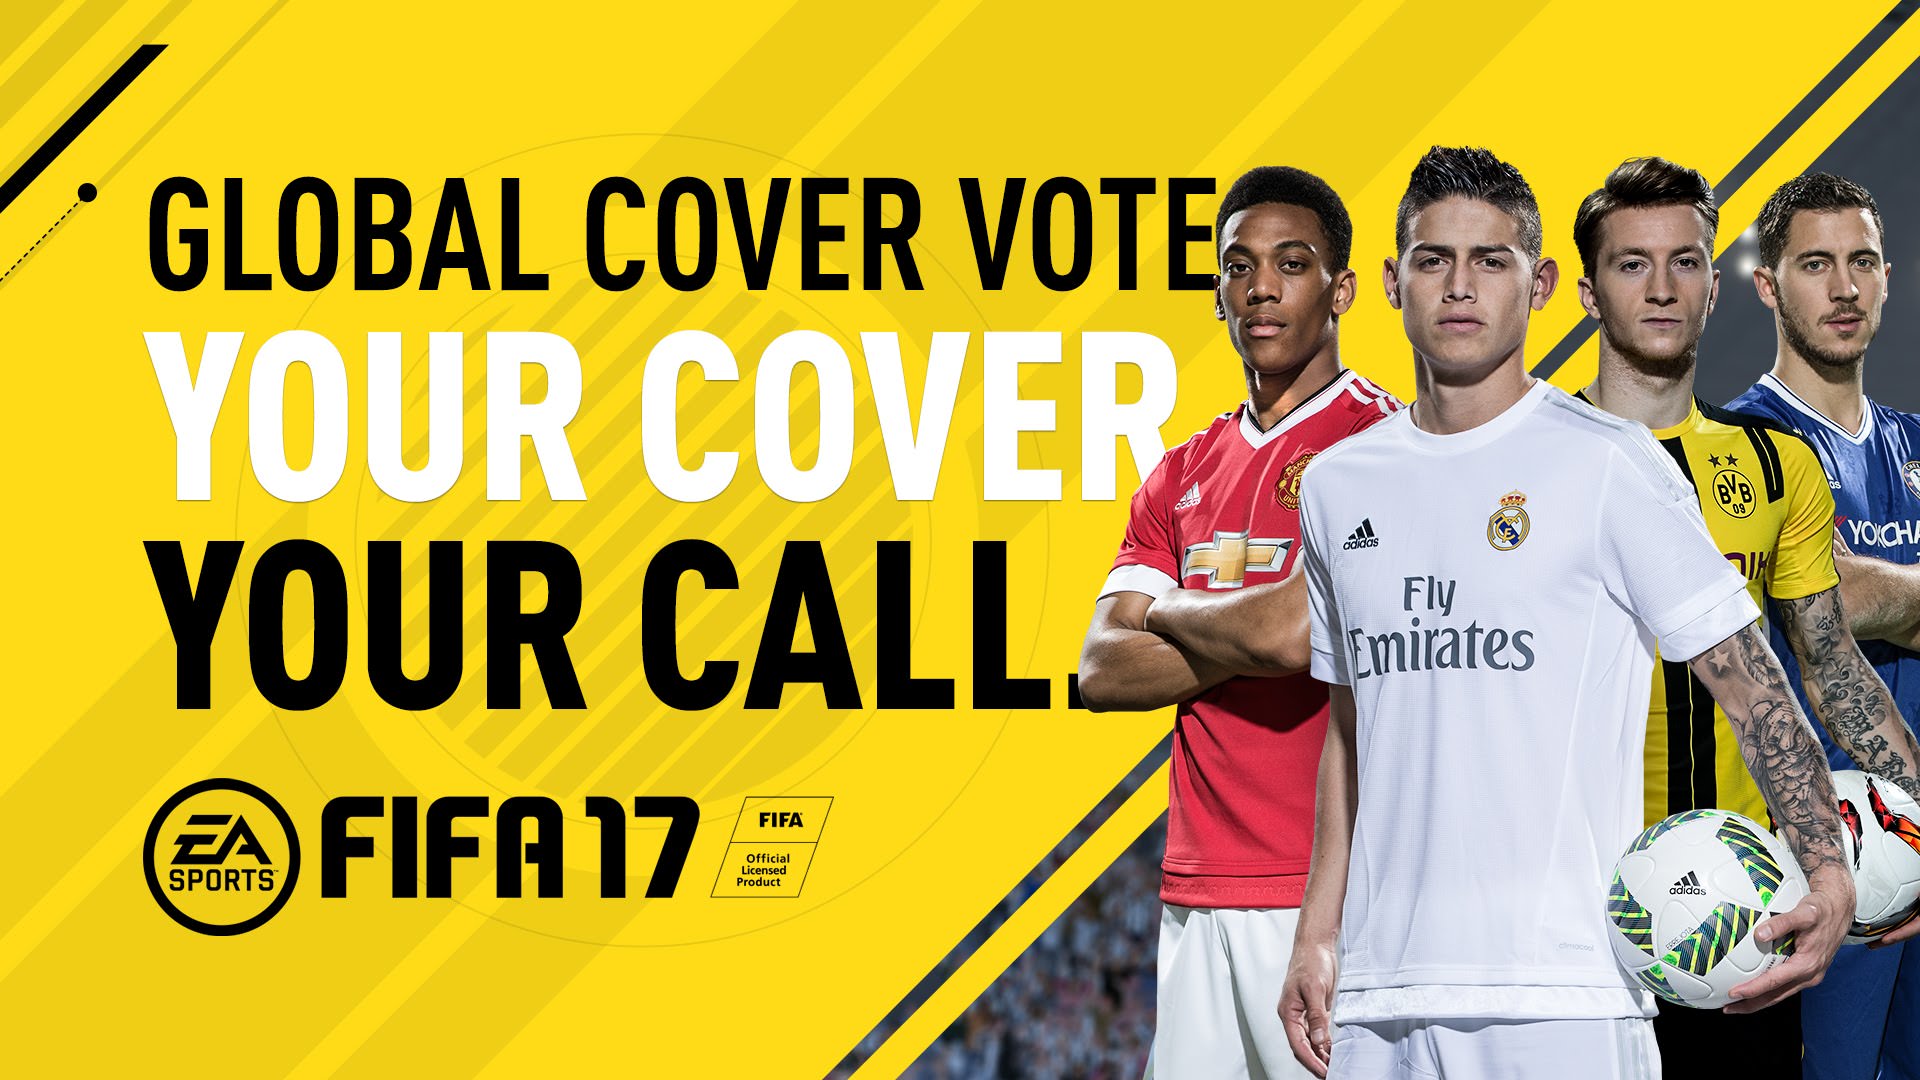 FIFA 17 Cover Vote FIFPlay